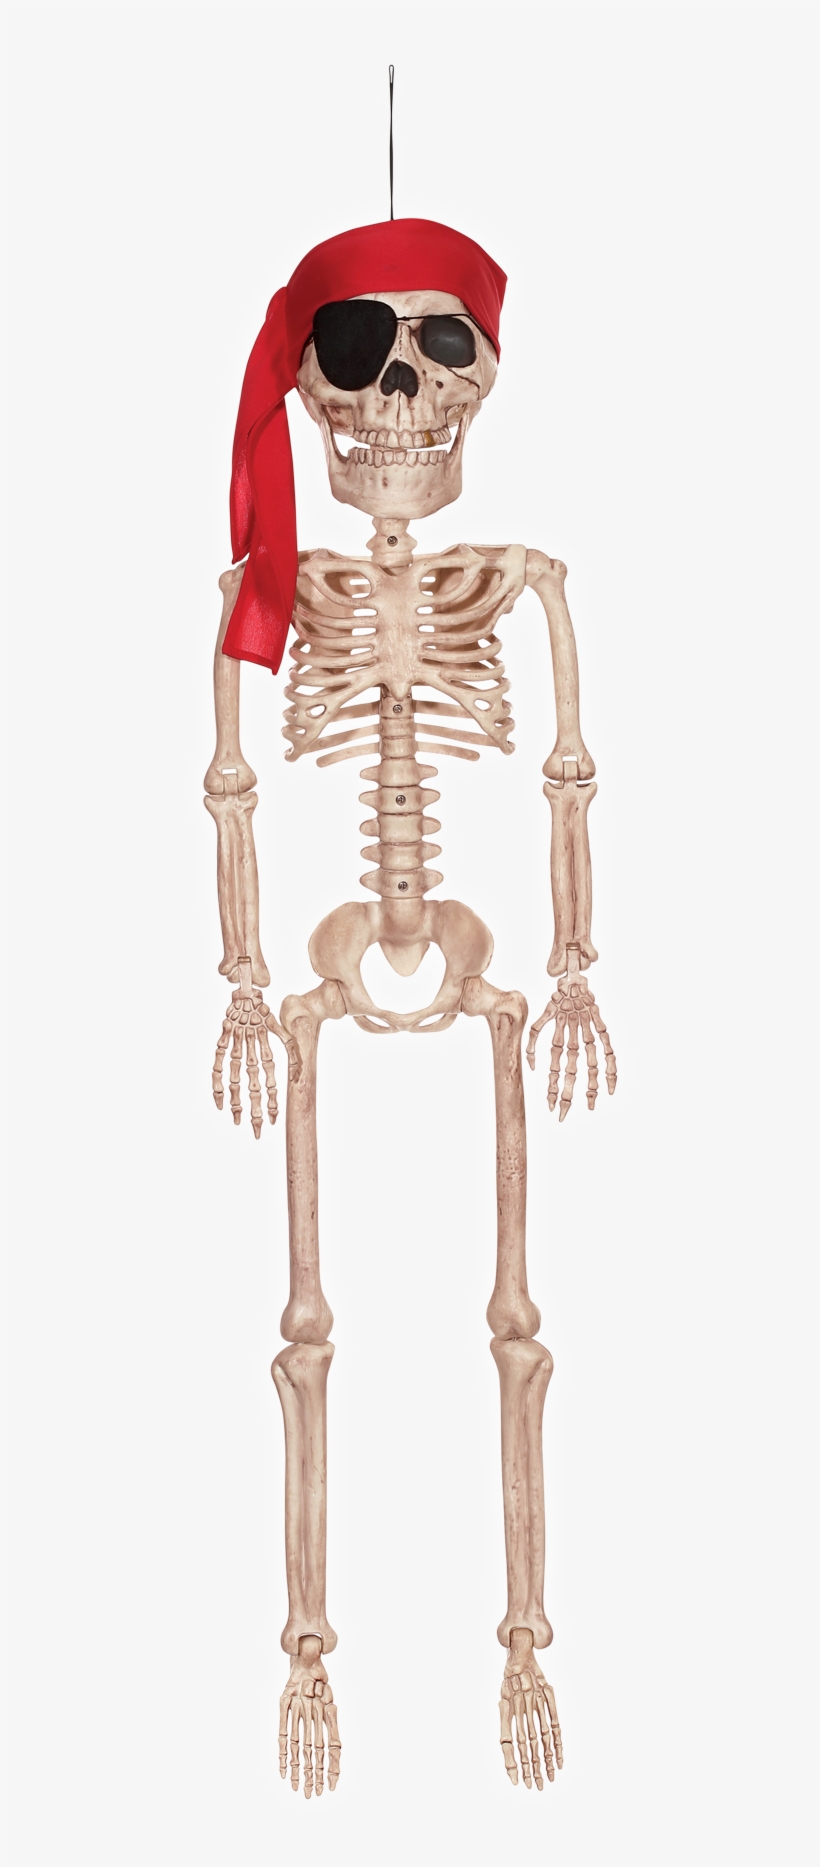 Pirate Skeleton Jr - Crazy Bonez Pirate Skeleton Jr 36", transparent png #2860260